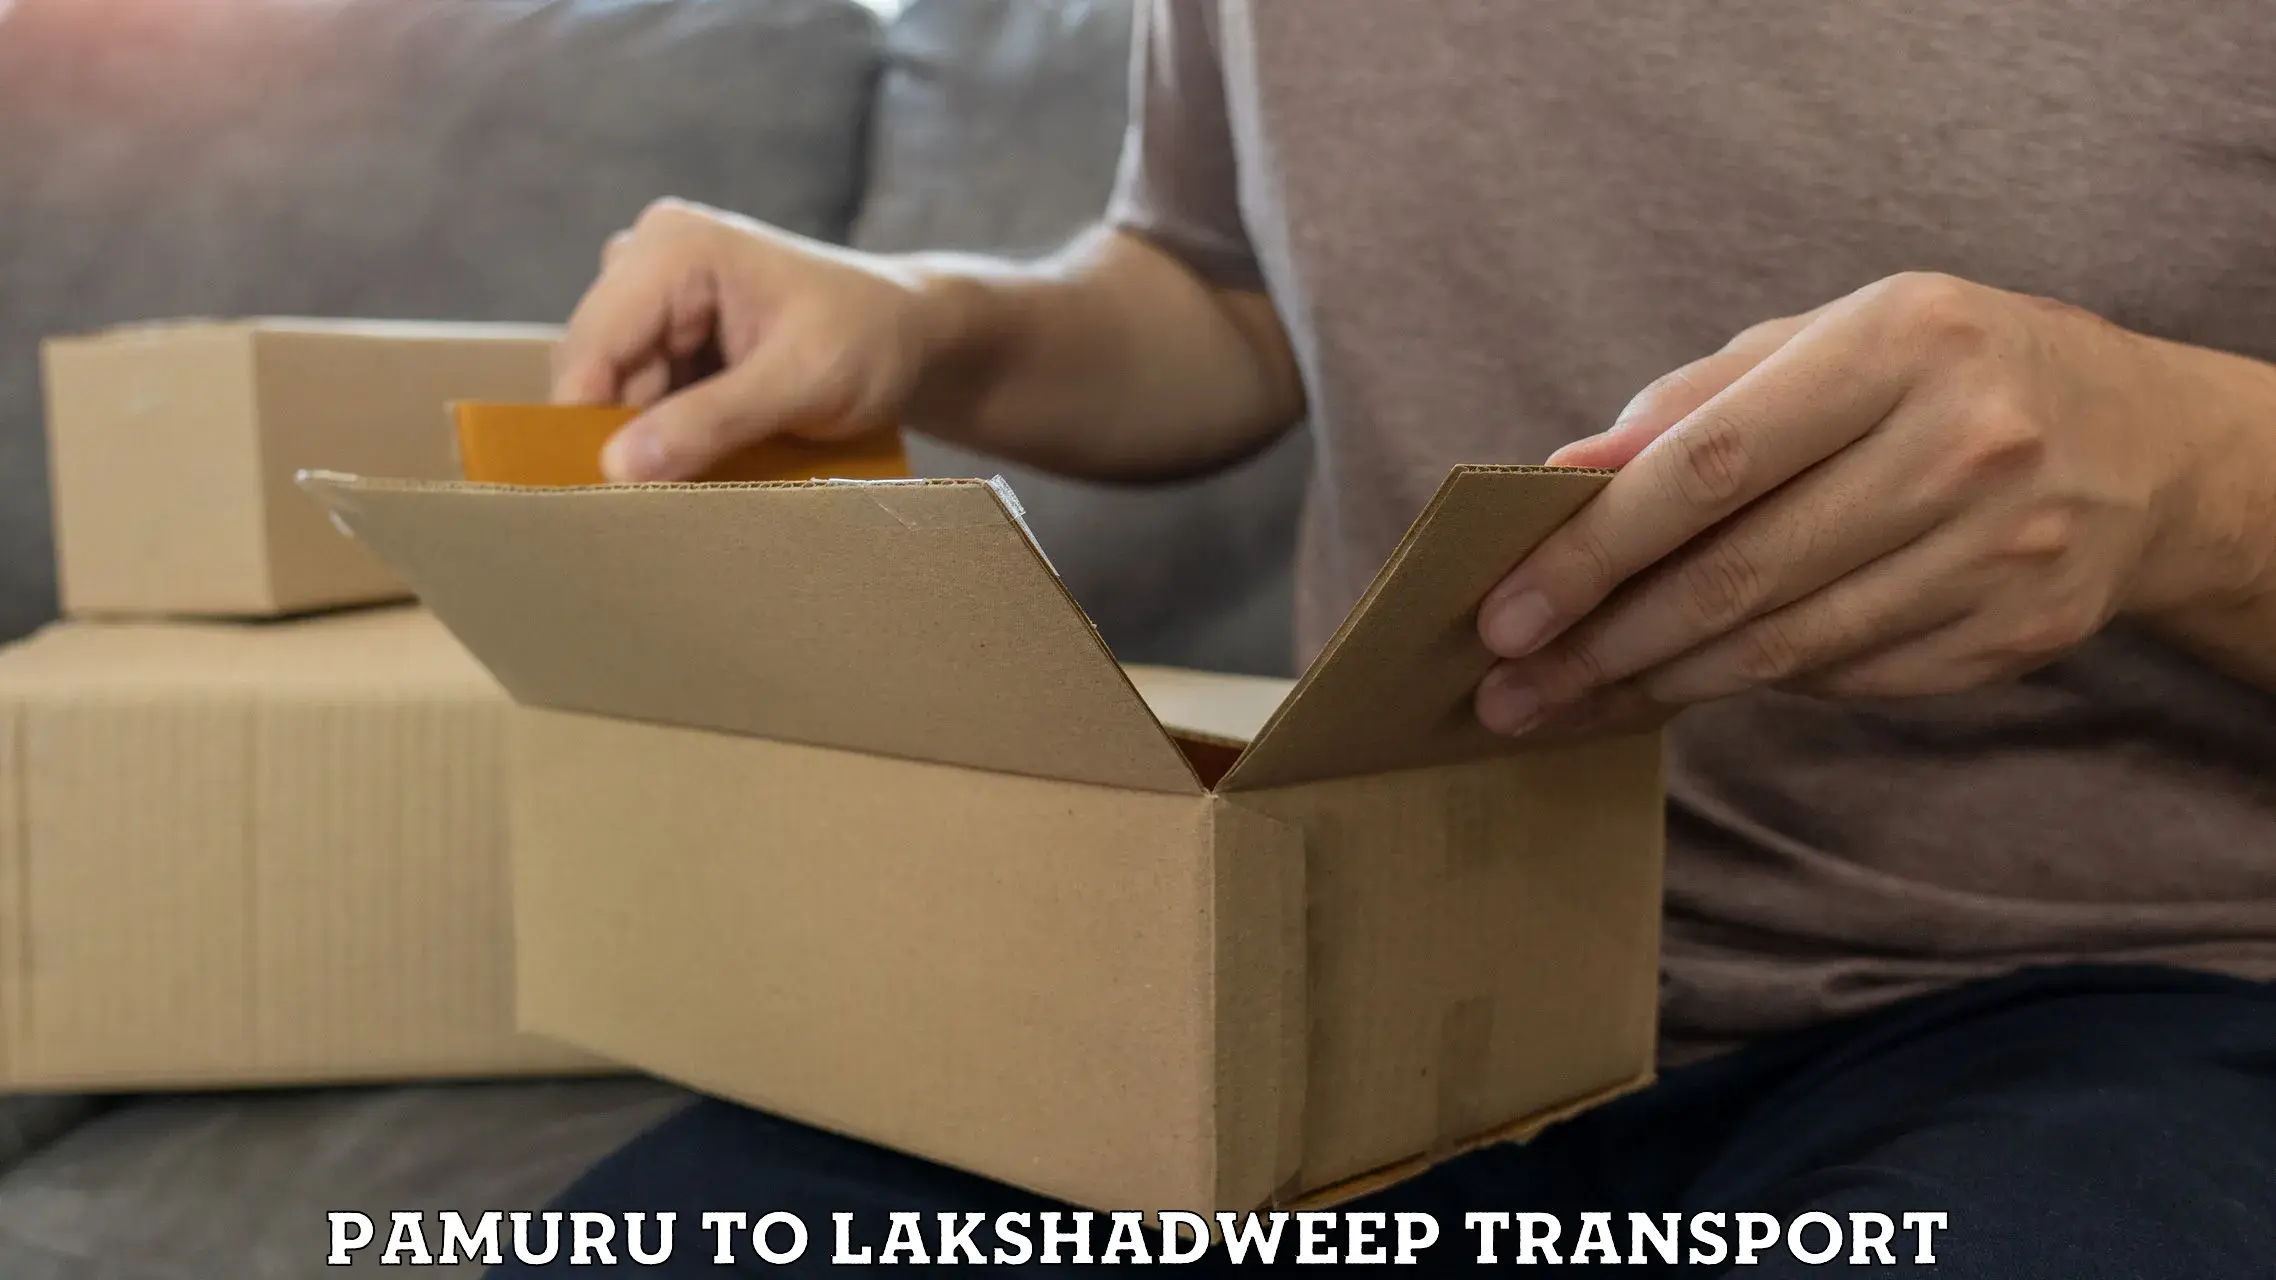 Nationwide transport services Pamuru to Lakshadweep